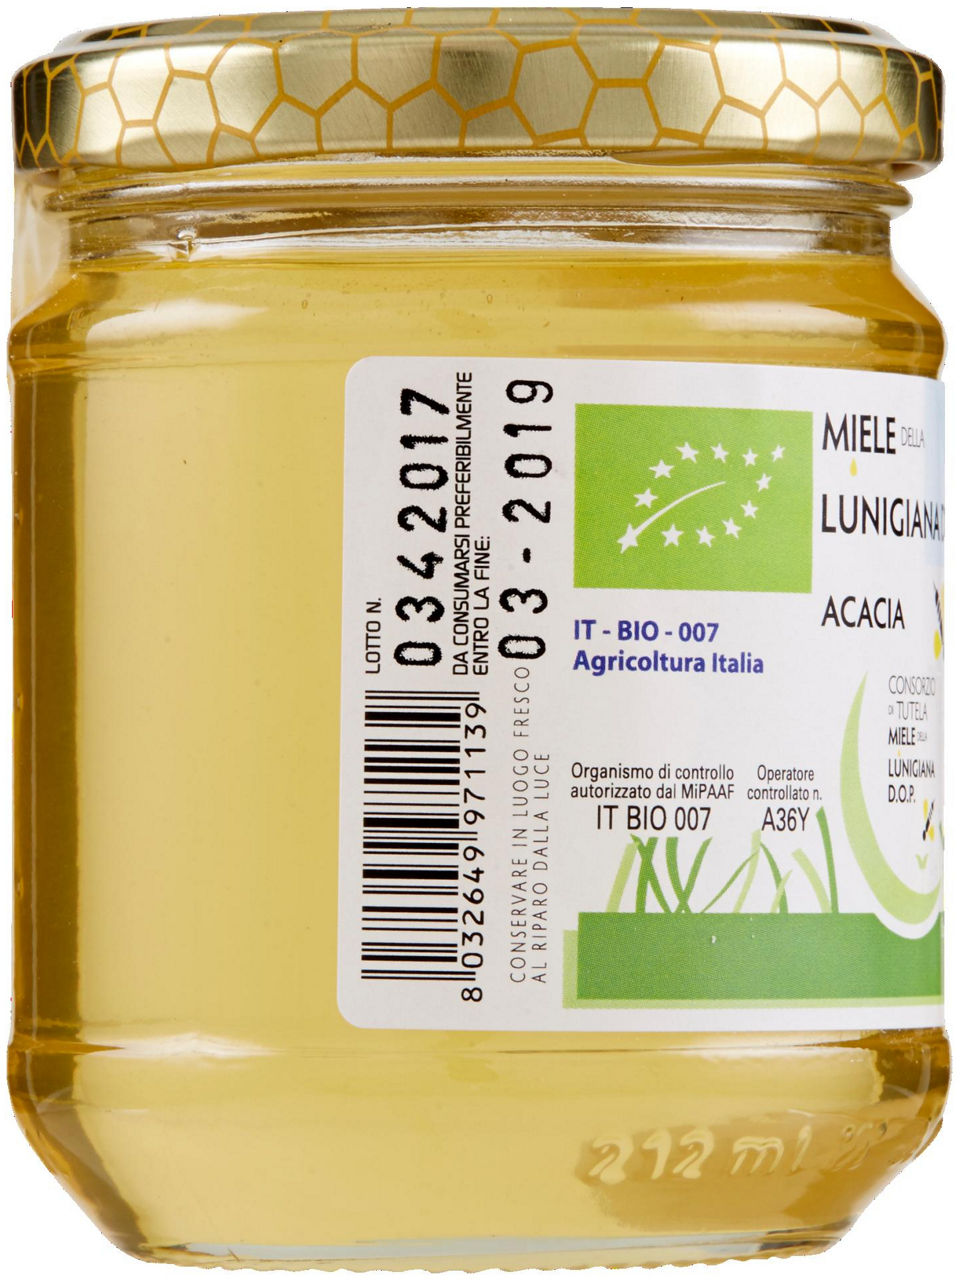 Miele della Lunigiana Bio D.O.P. Acacia 250 g - 1